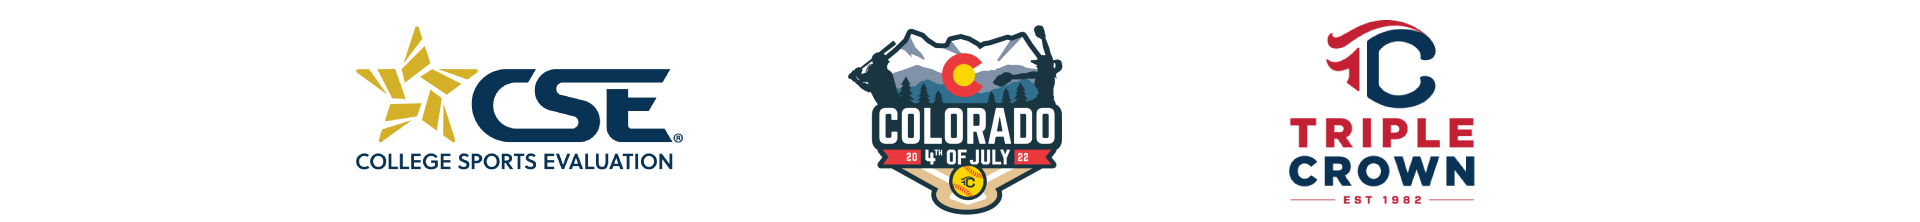 Colorado 4th of July